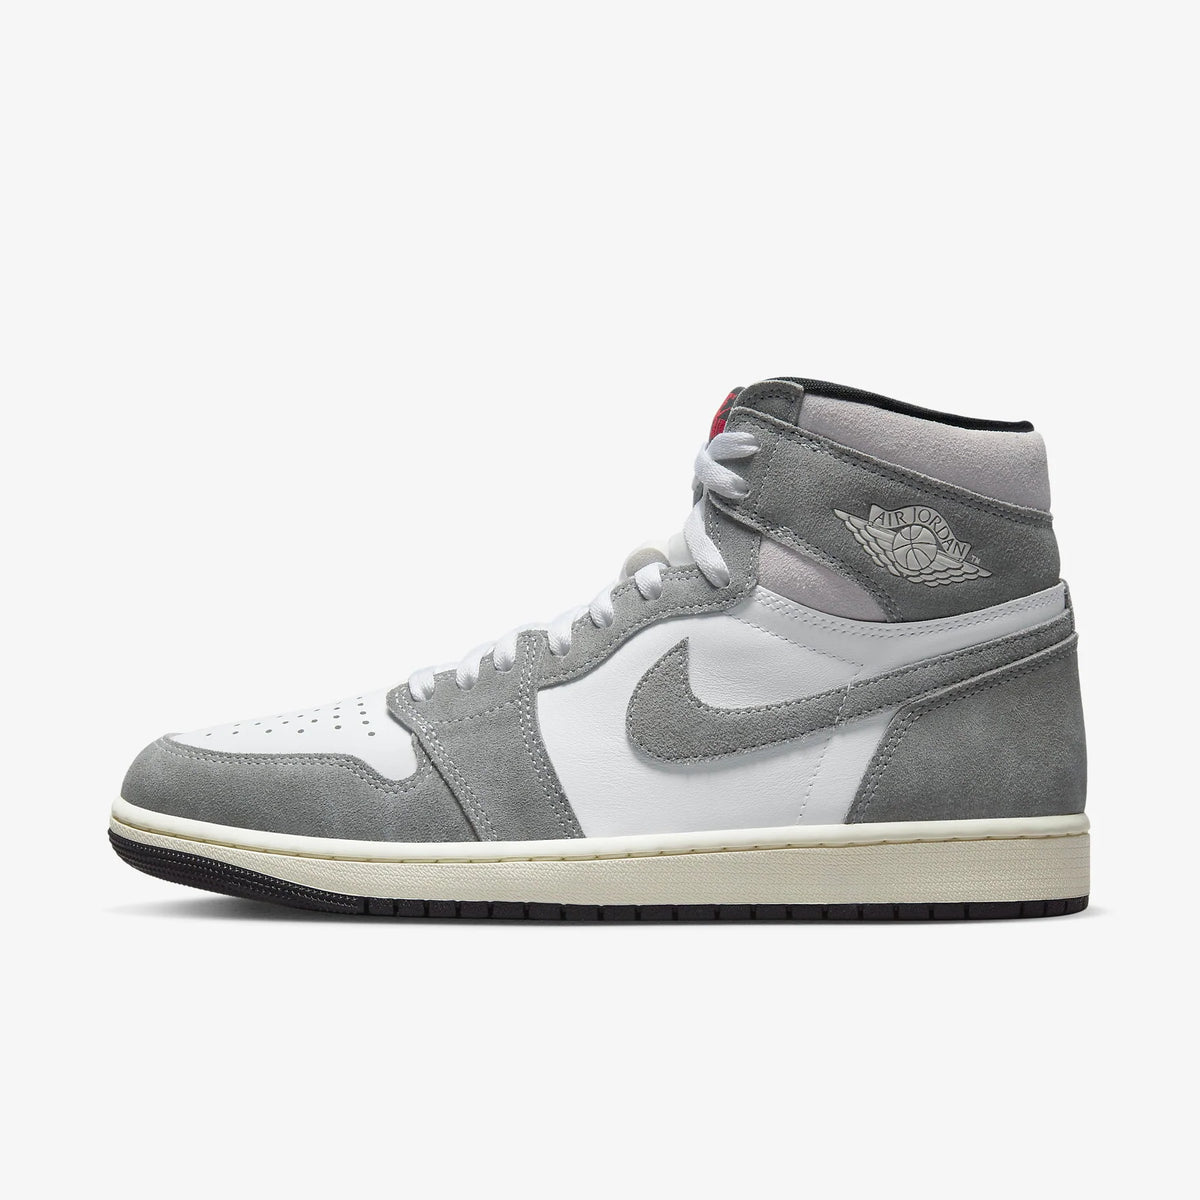 Sneakers Release – Jordan 1 Retro High OG “Patent